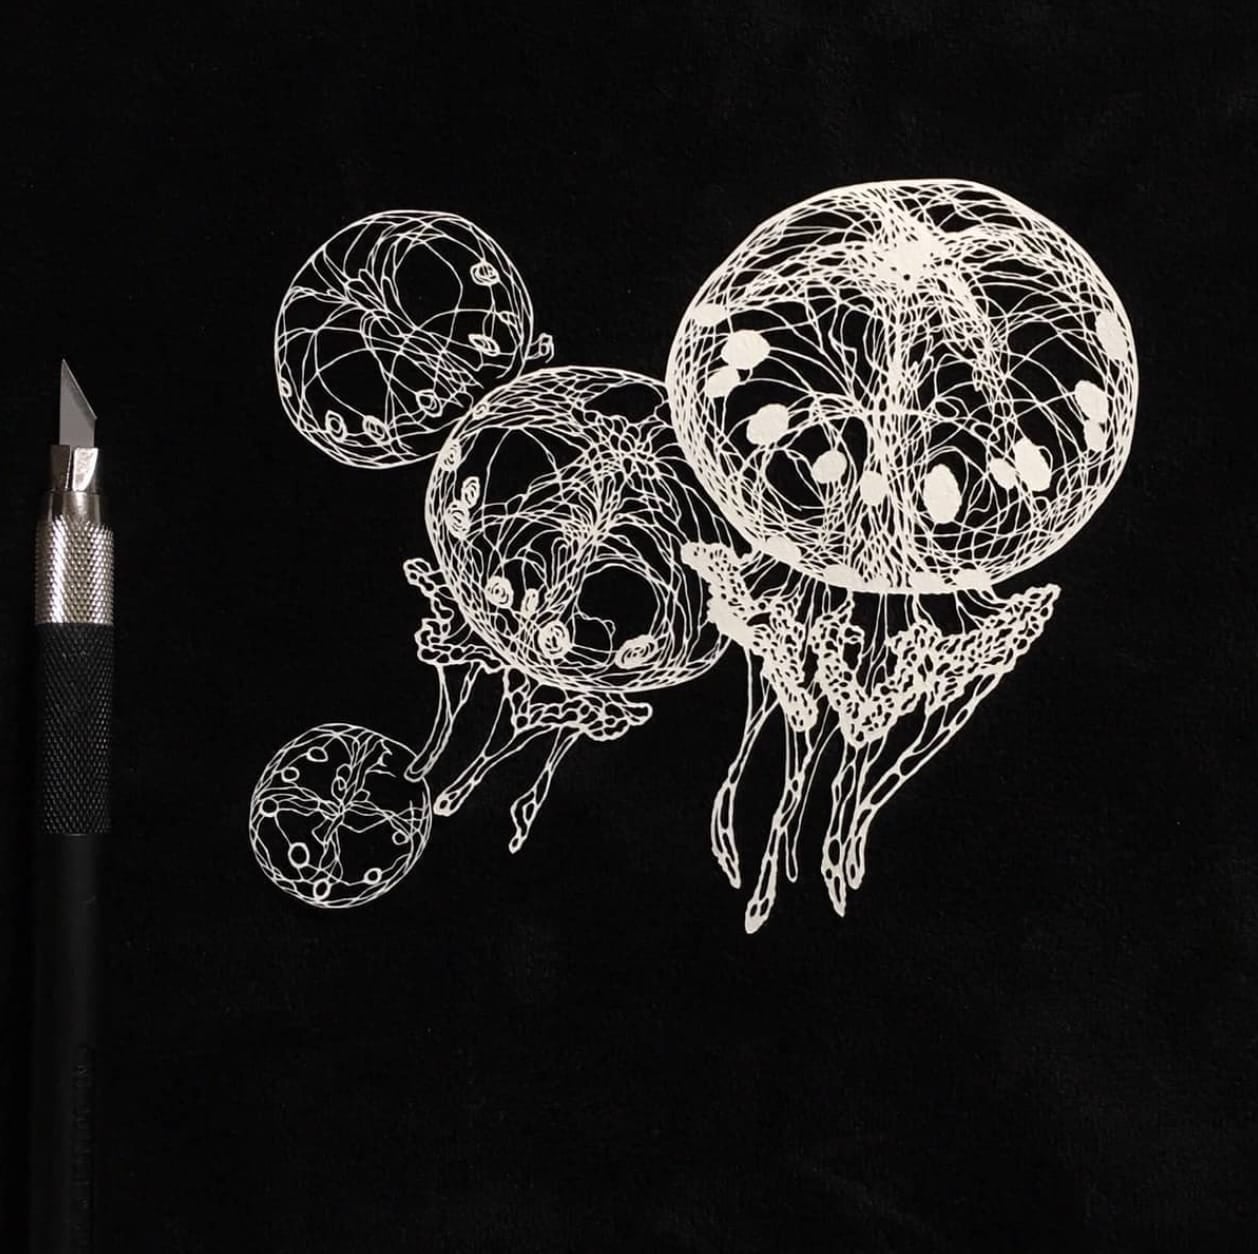 ศิลปินชาวญี่ปุ่น Masayo Fukuda ตัดกระดาษรูปสัตว์ต่าง ๆ